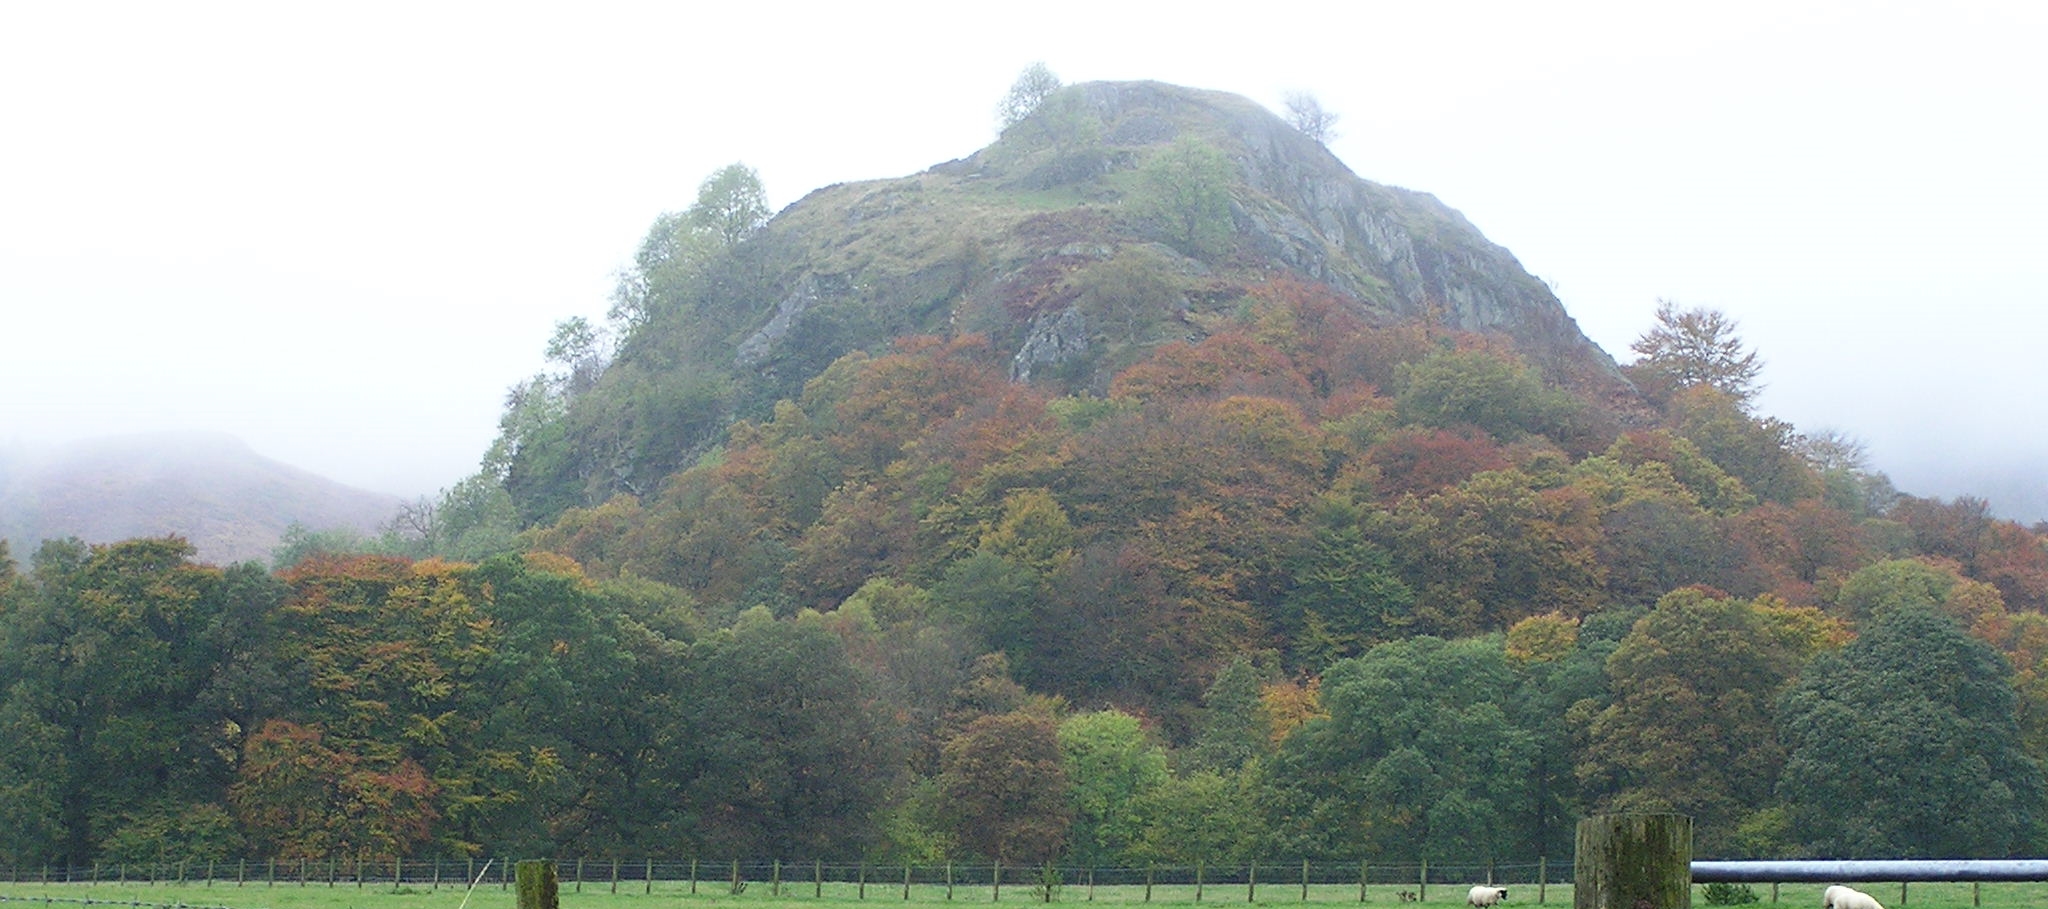 a rocky hill against an overcast sky